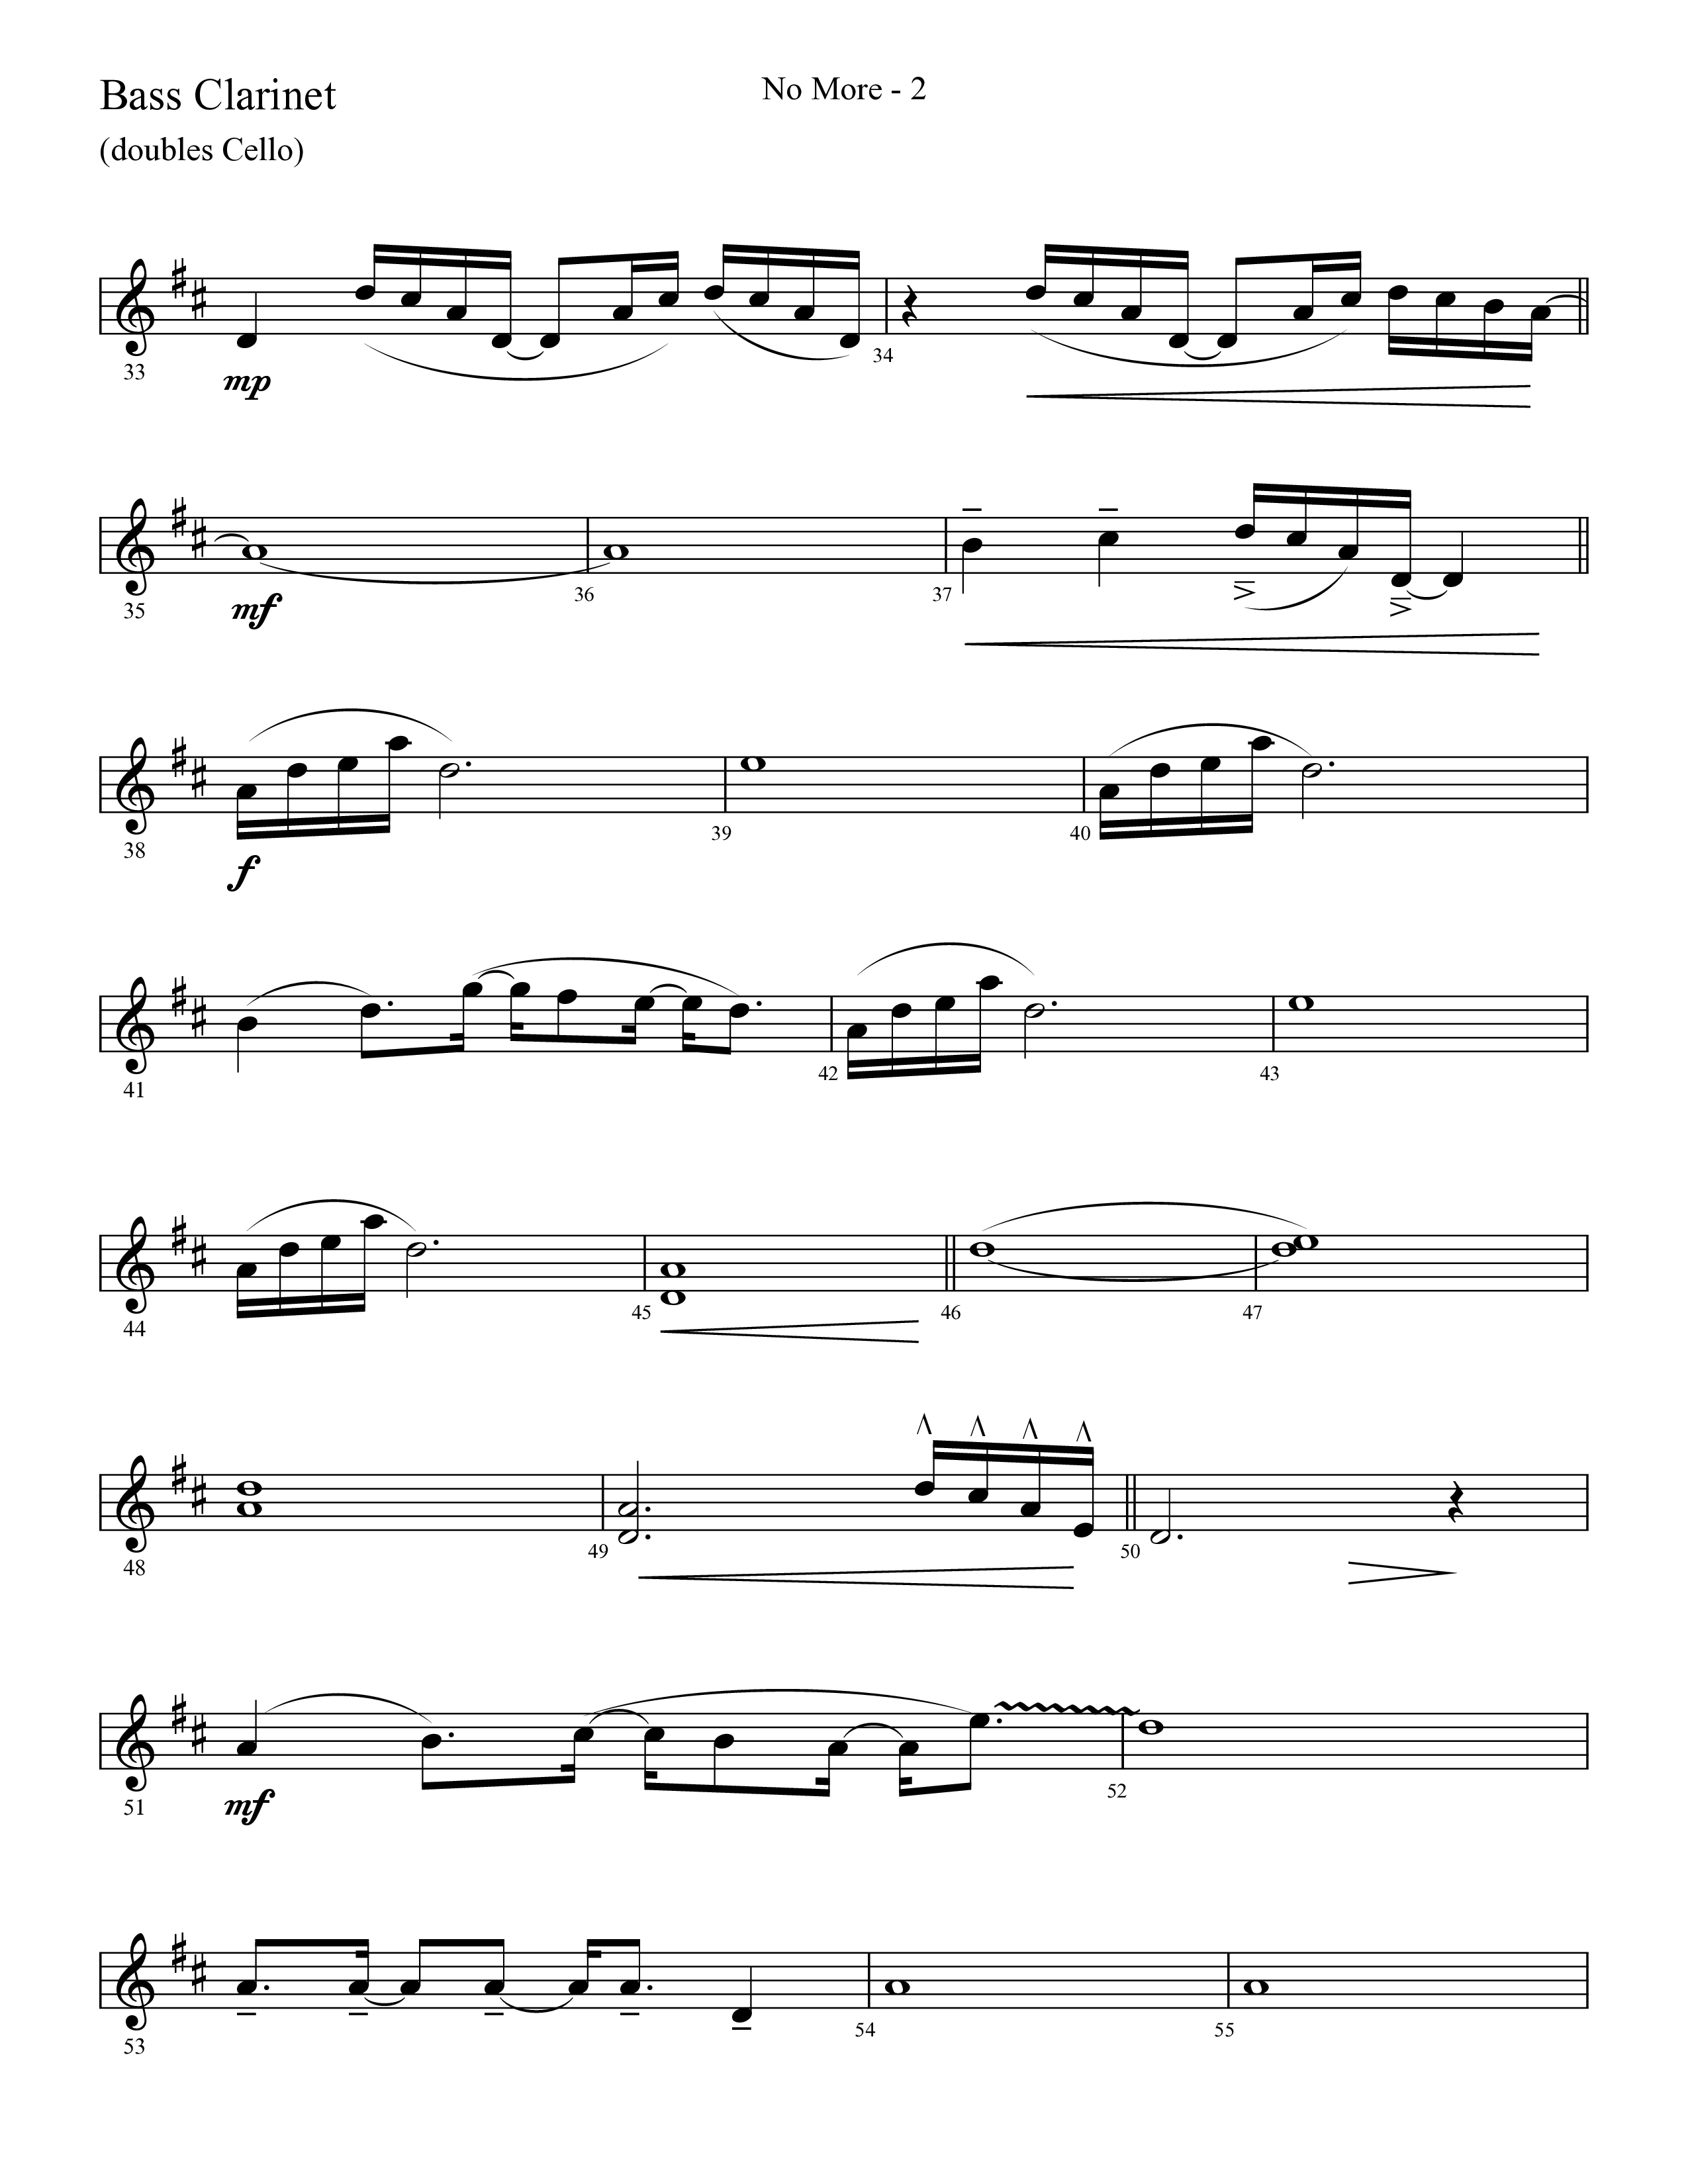 No More (Choral Anthem SATB) Bass Clarinet (Lifeway Choral / Arr. Cliff Duren)